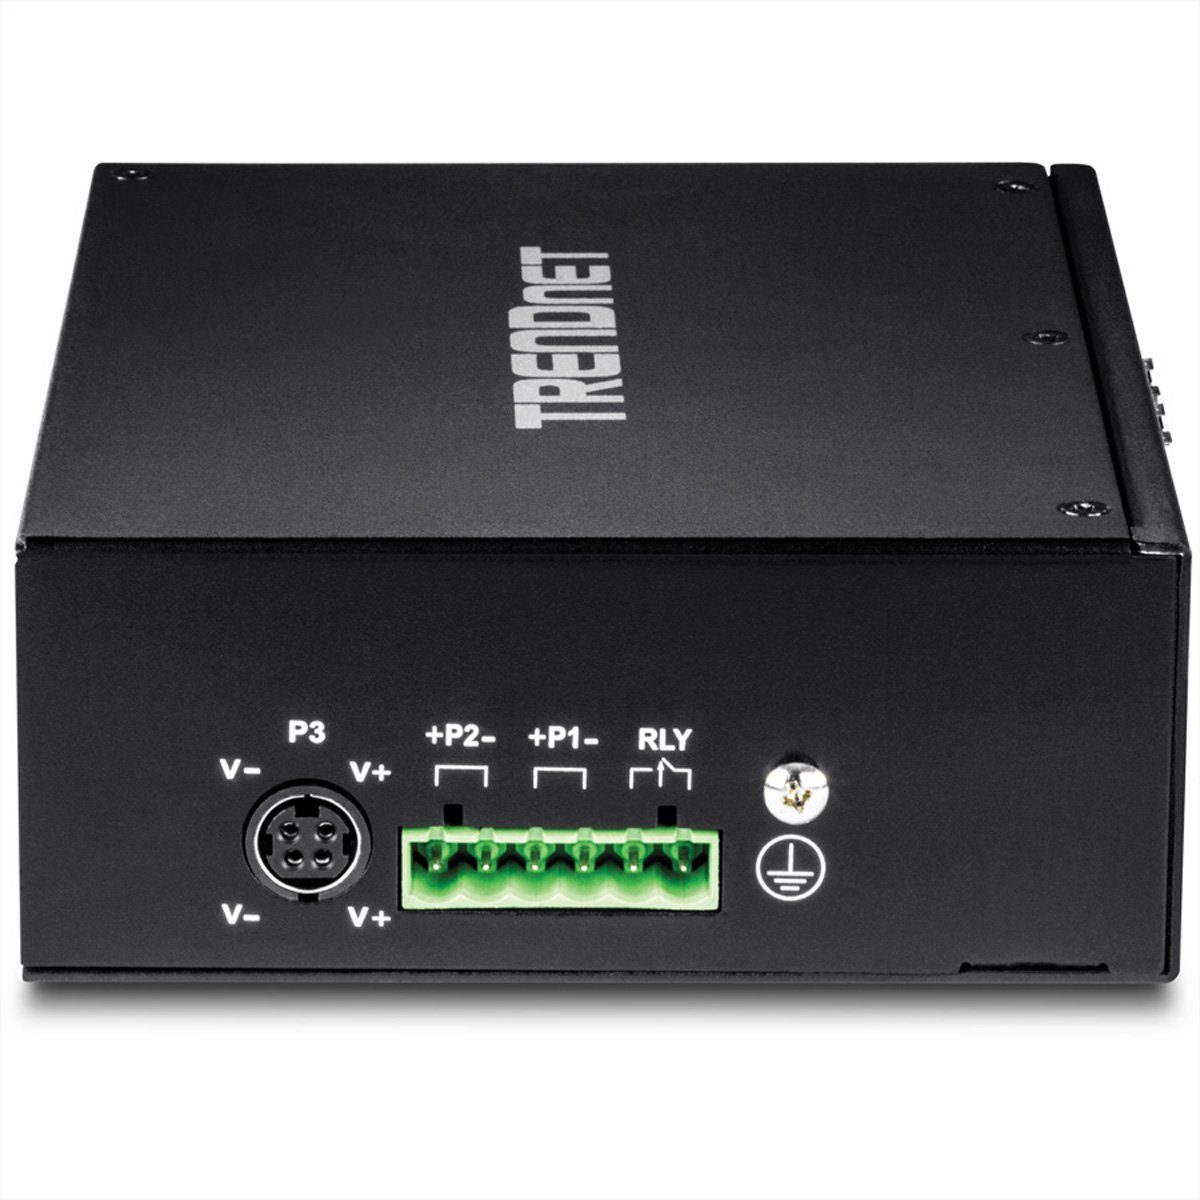 TI-PG102 Gigabit Industrial 10Port DIN-Rail Trendnet Switch Netzwerk-Switch PoE+